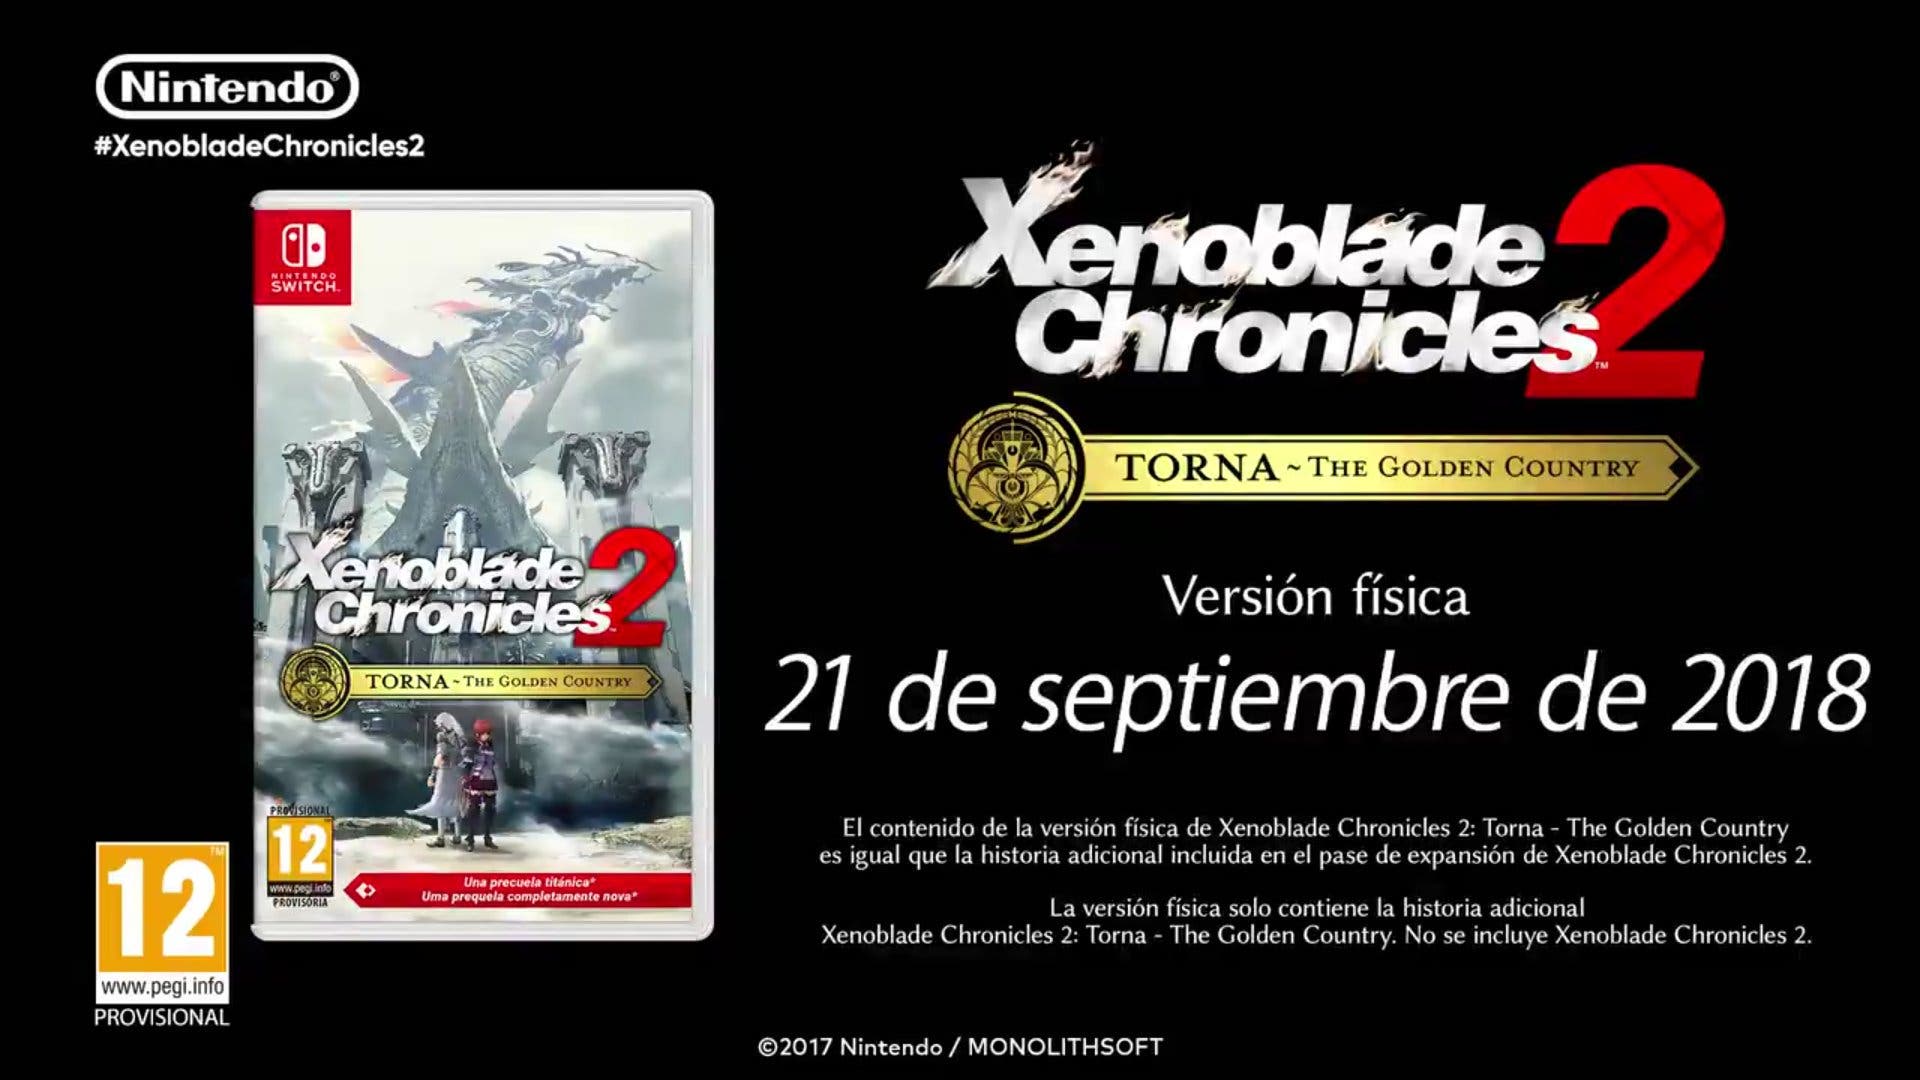 [Act.] Torna the Golden Country, el nuevo DLC para Xenoblade Chronicles 2, recibirá una versión física el 21 de septiembre